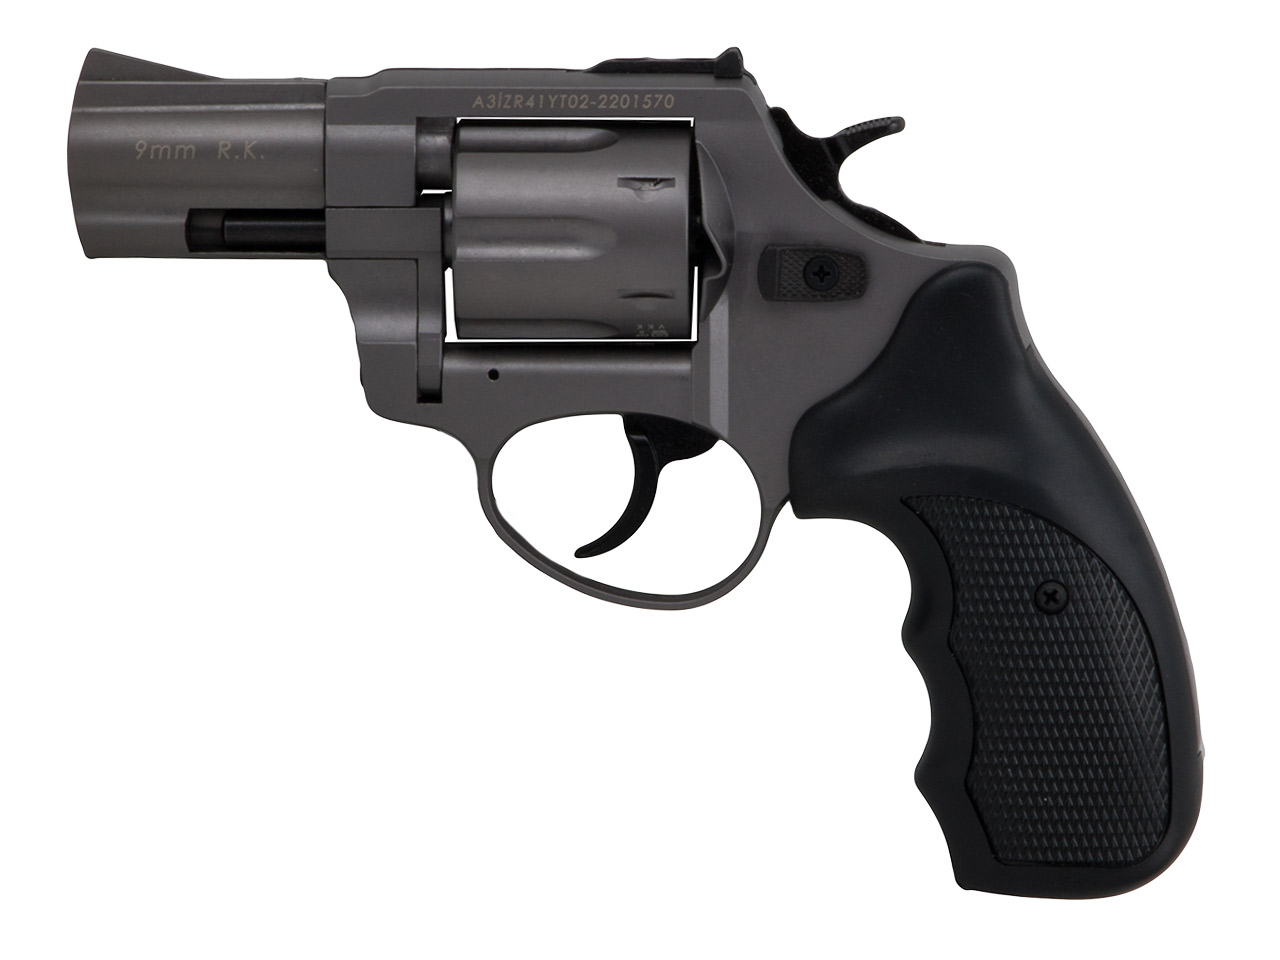 Schreckschuss Revolver Zoraki R1 Titan 2,5 Zoll PTB 1022 Kaliber 9 mm R.K. (P18)